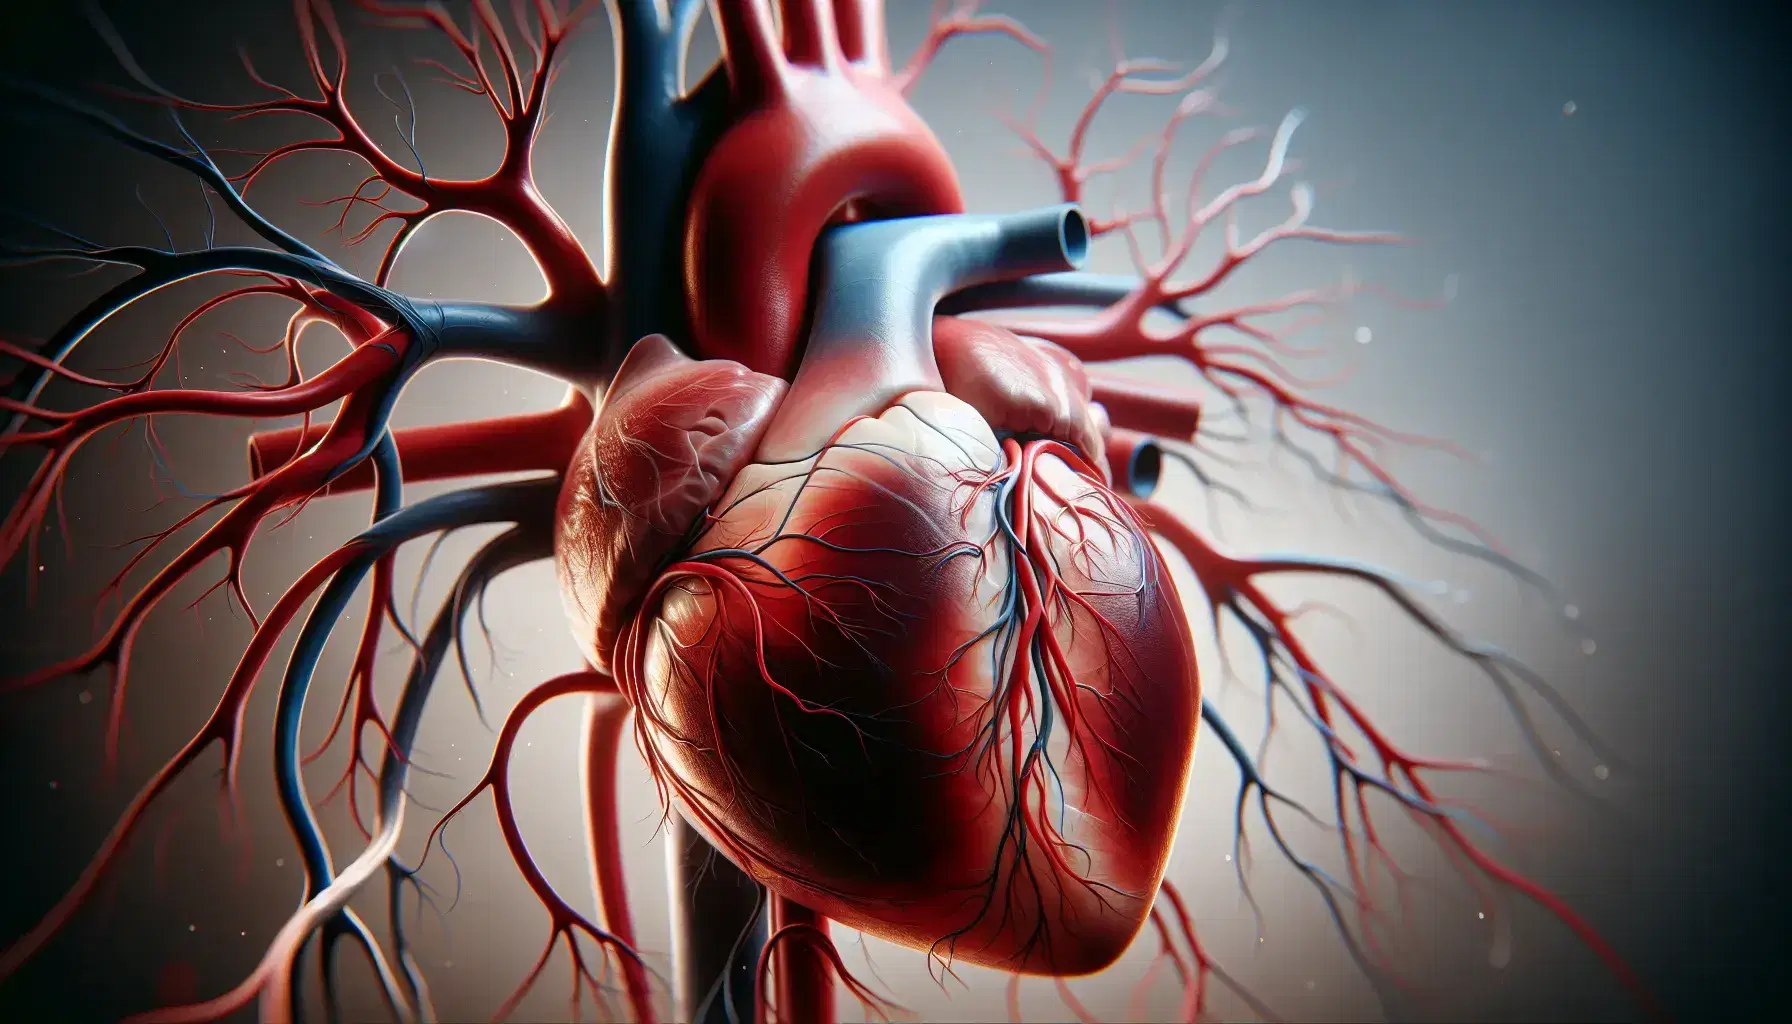 Modelo anatómico detallado de un corazón humano con cámaras y vasos principales visibles en tonos rojos y azules, destacando la red circulatoria sobre fondo neutro.